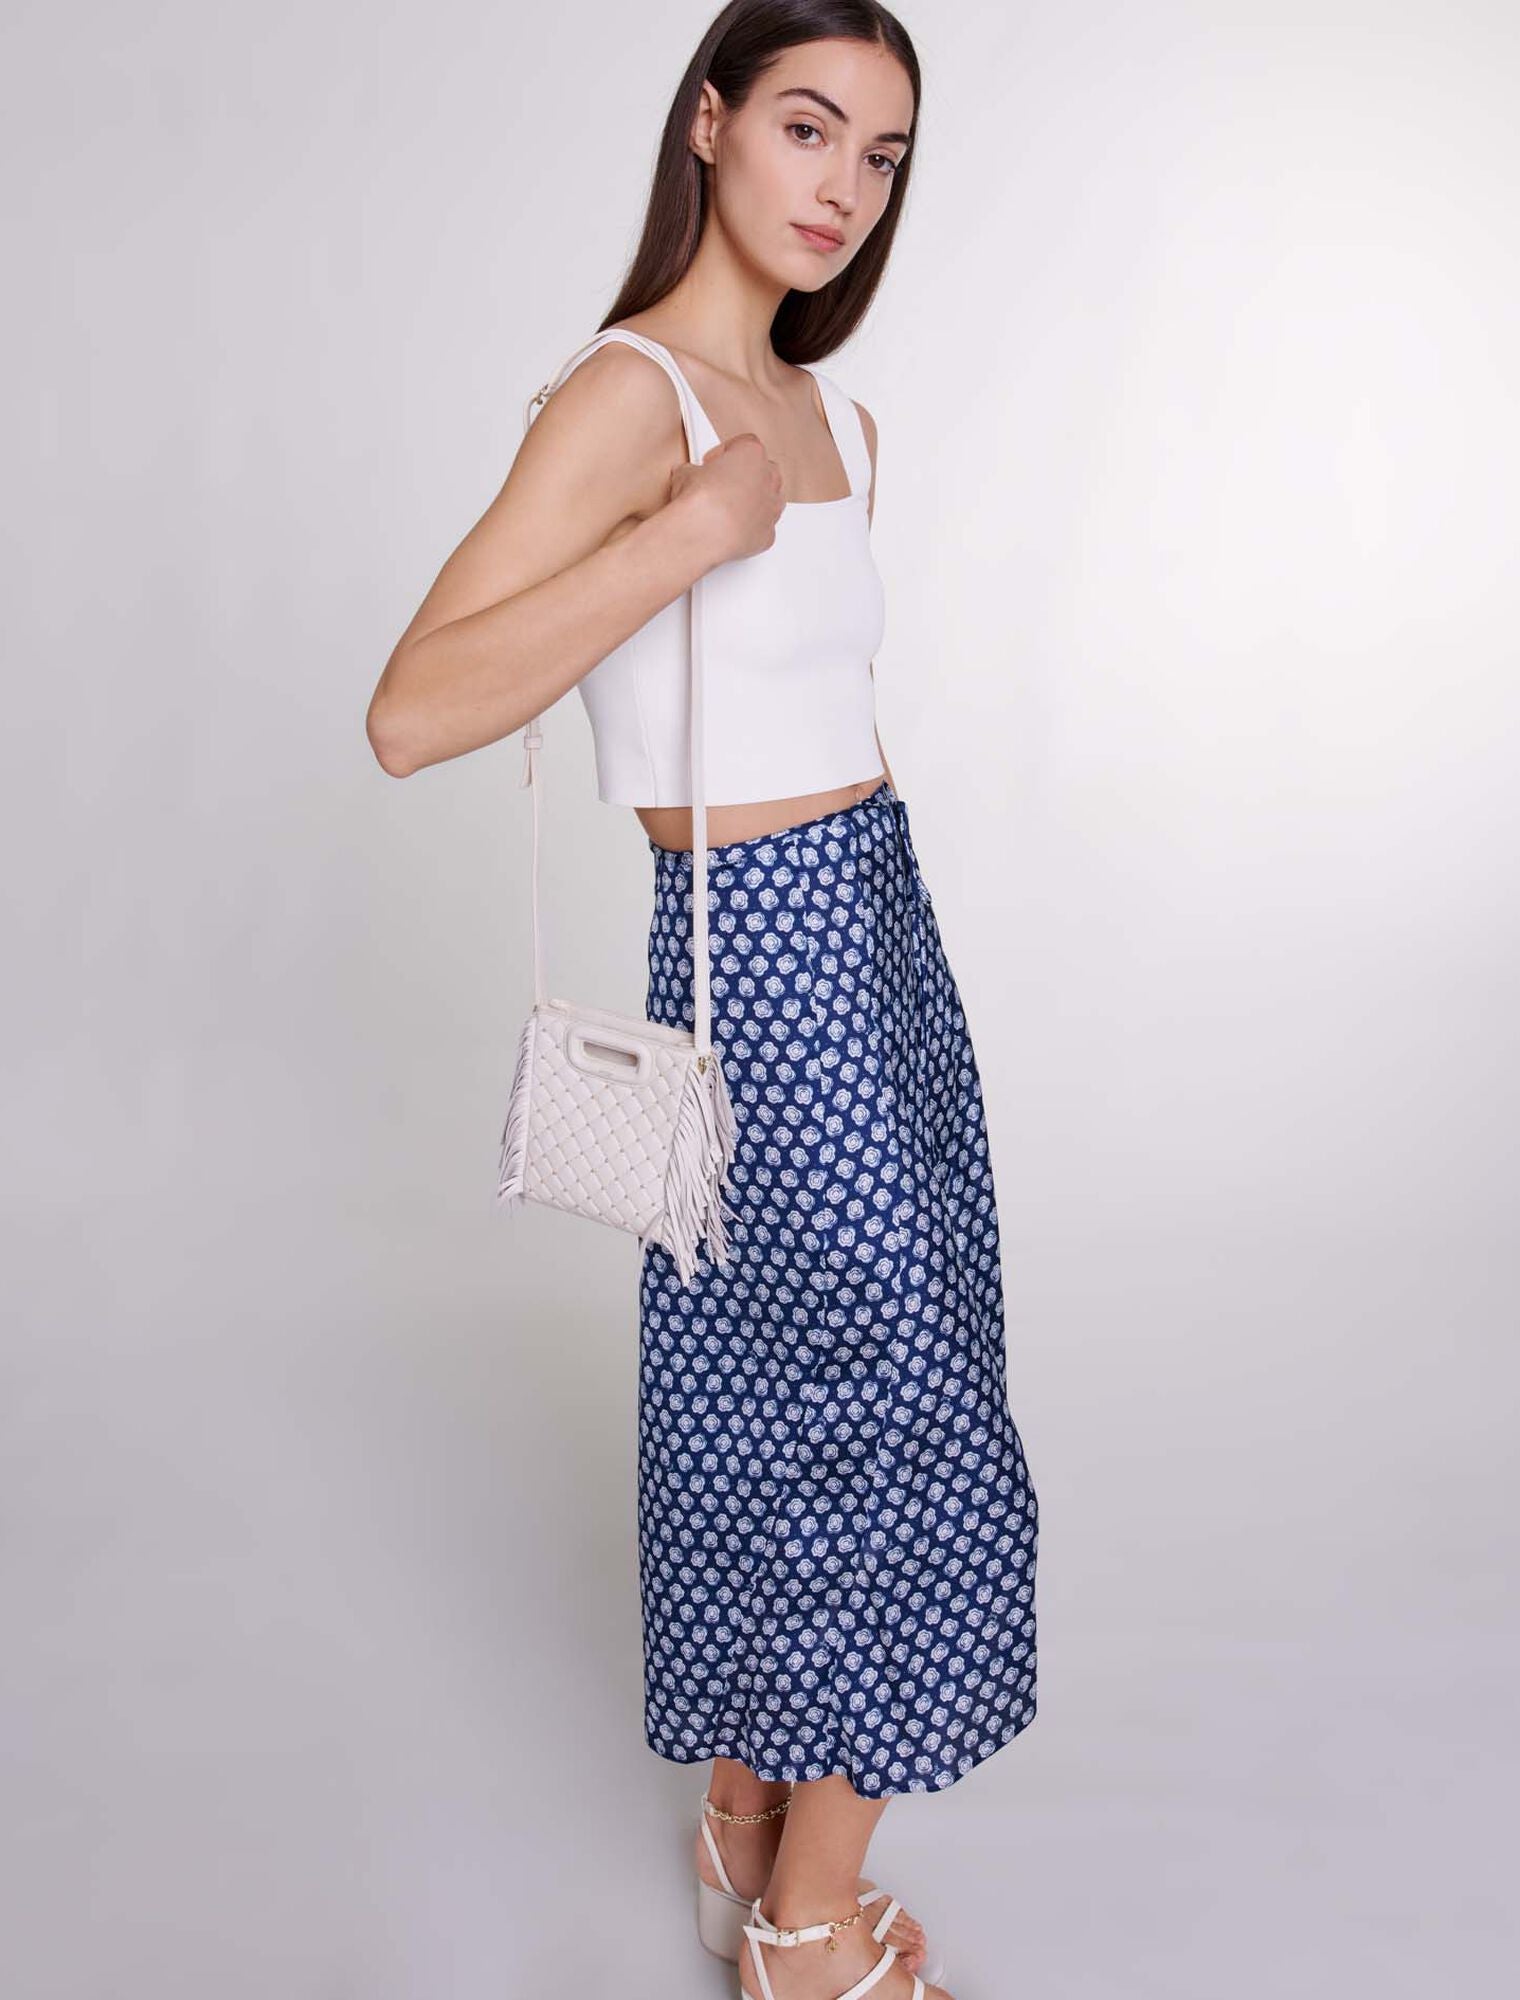 Clover Navy/Ecru Mid-length satin-effect skirt